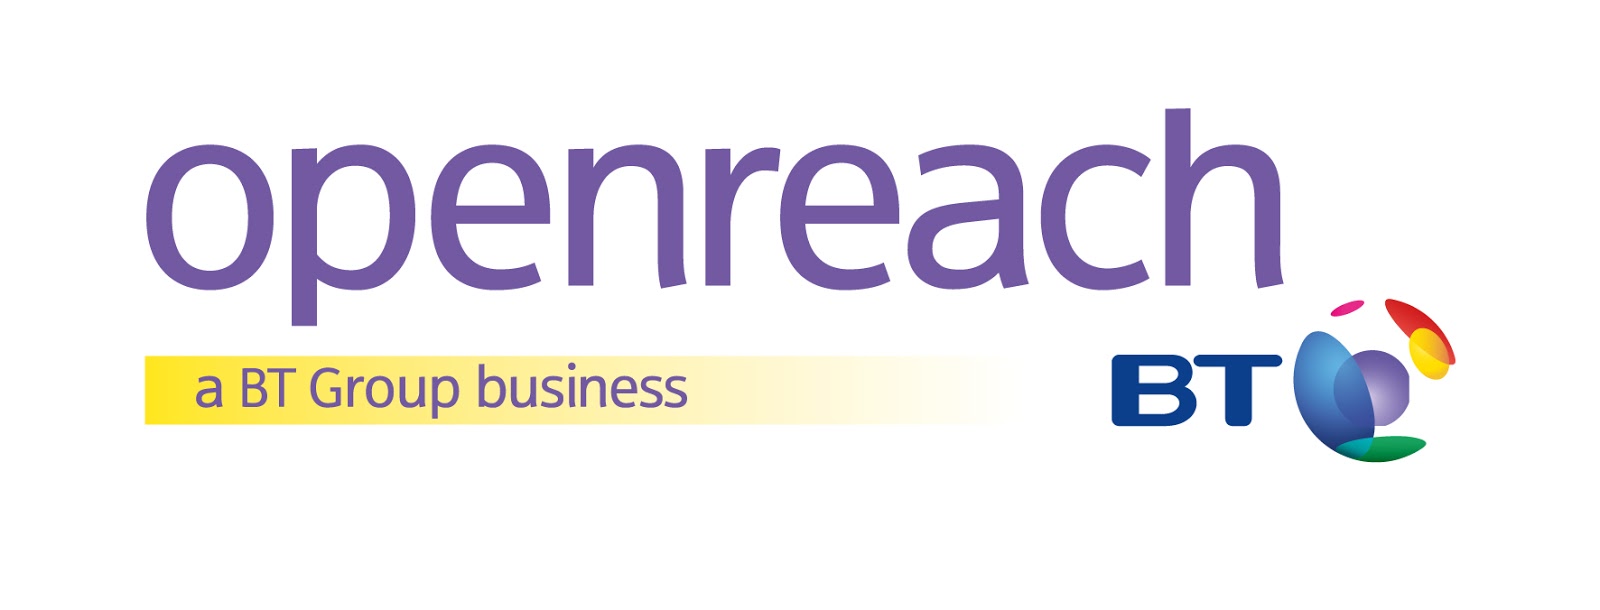 openreach-logo1